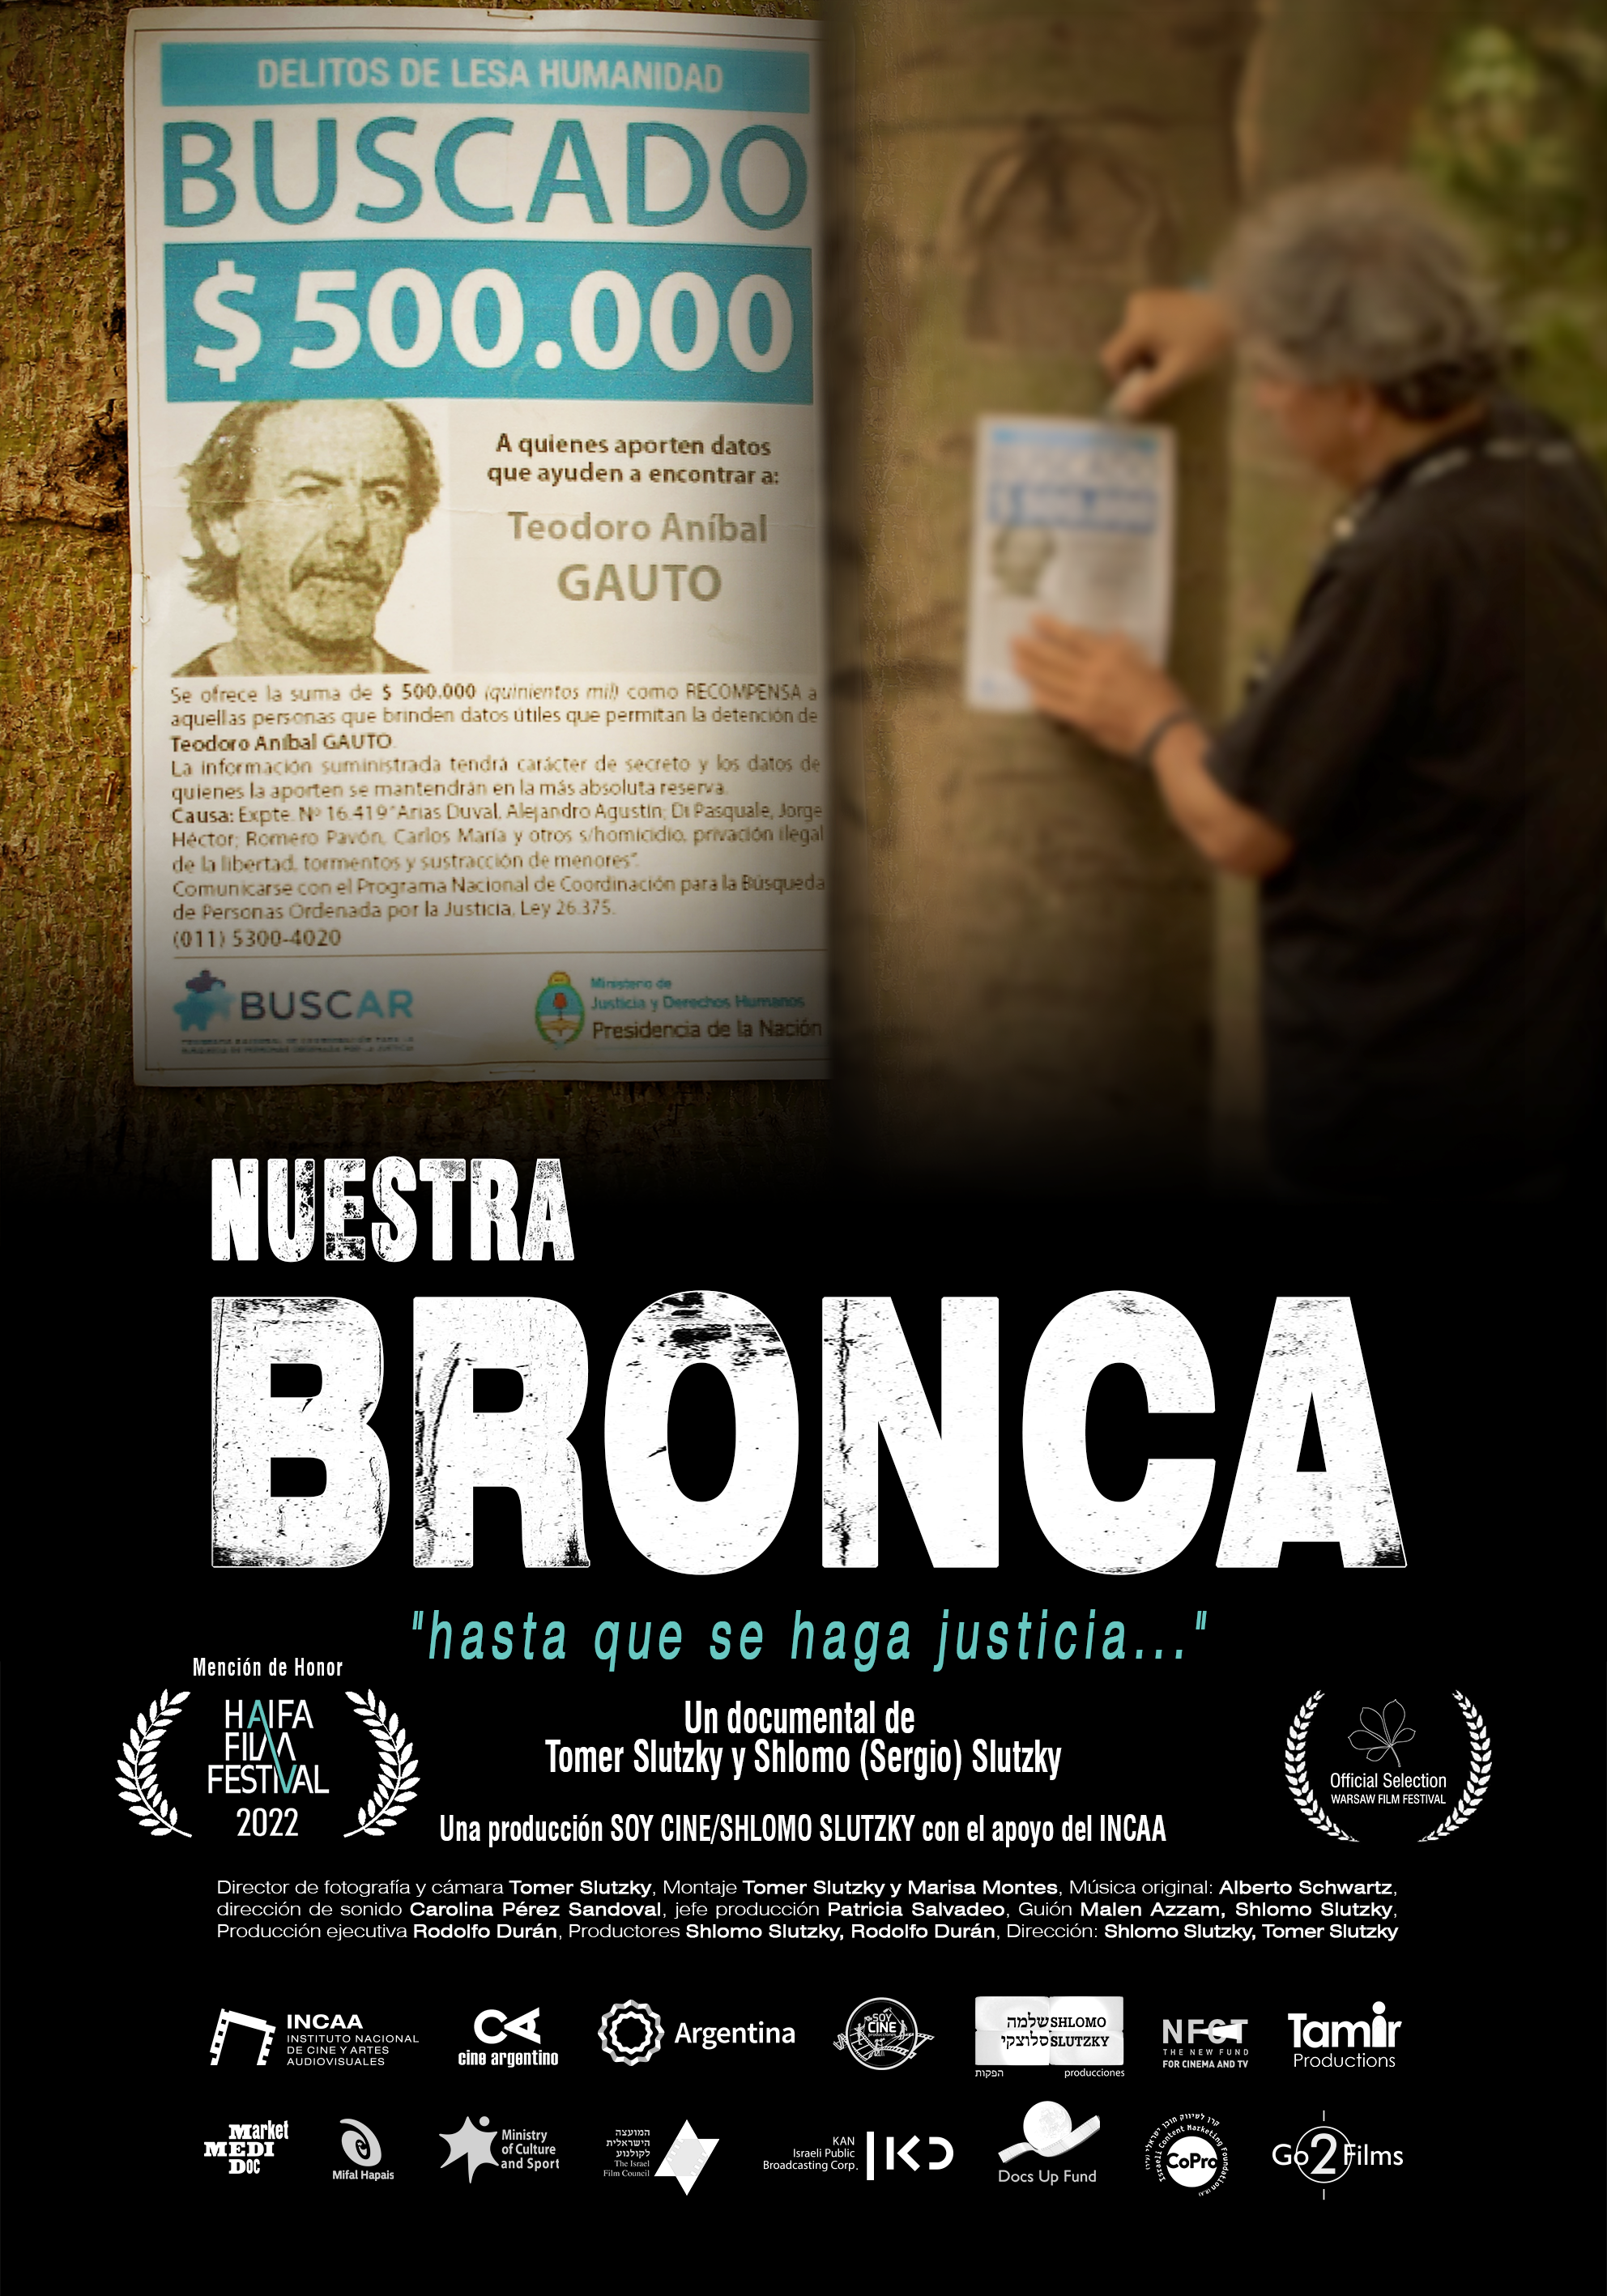 Afiche de "Nuestra bronca", documental sobre las consecuencias de la dictadura cívico-militar que gobernó Argentina entre 1976 y 1983